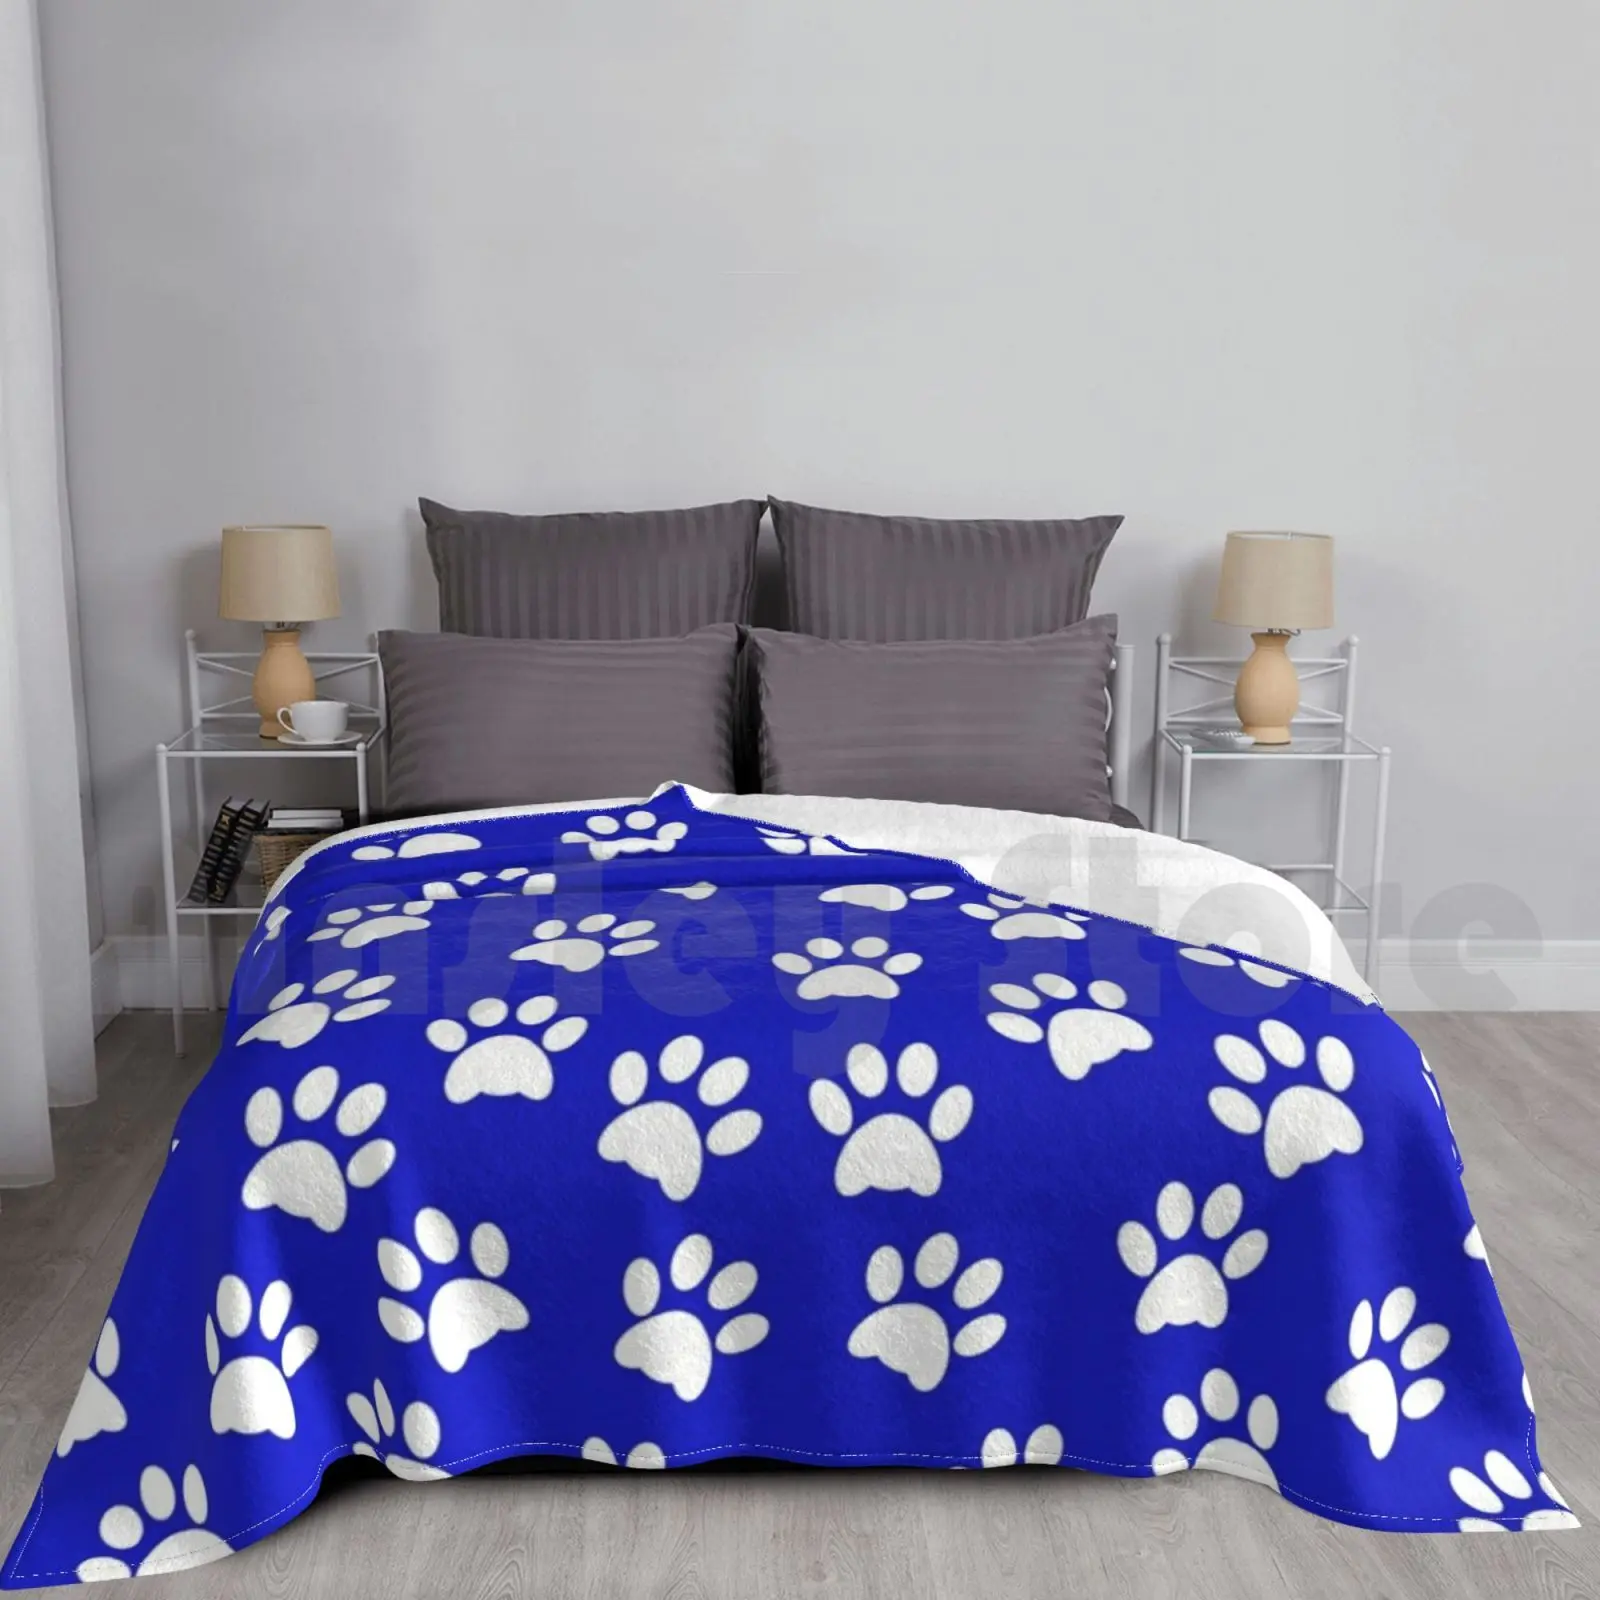 

Белые отпечатки лап на синем одеяле для дивана кровати путешествия лапы отпечатки лап кошки собаки животные узор следы питомцев